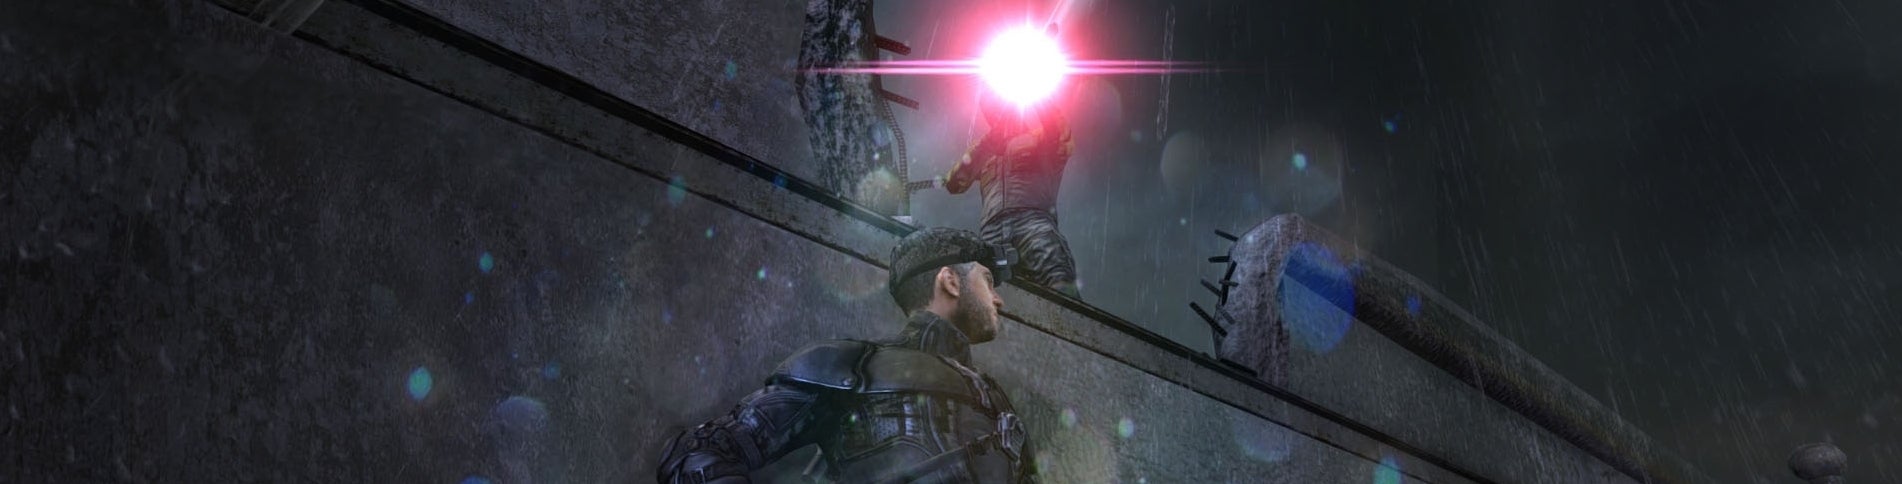 Image for Splinter Cell: Blacklist chtěl pět milionů, dosáhl jen na dva